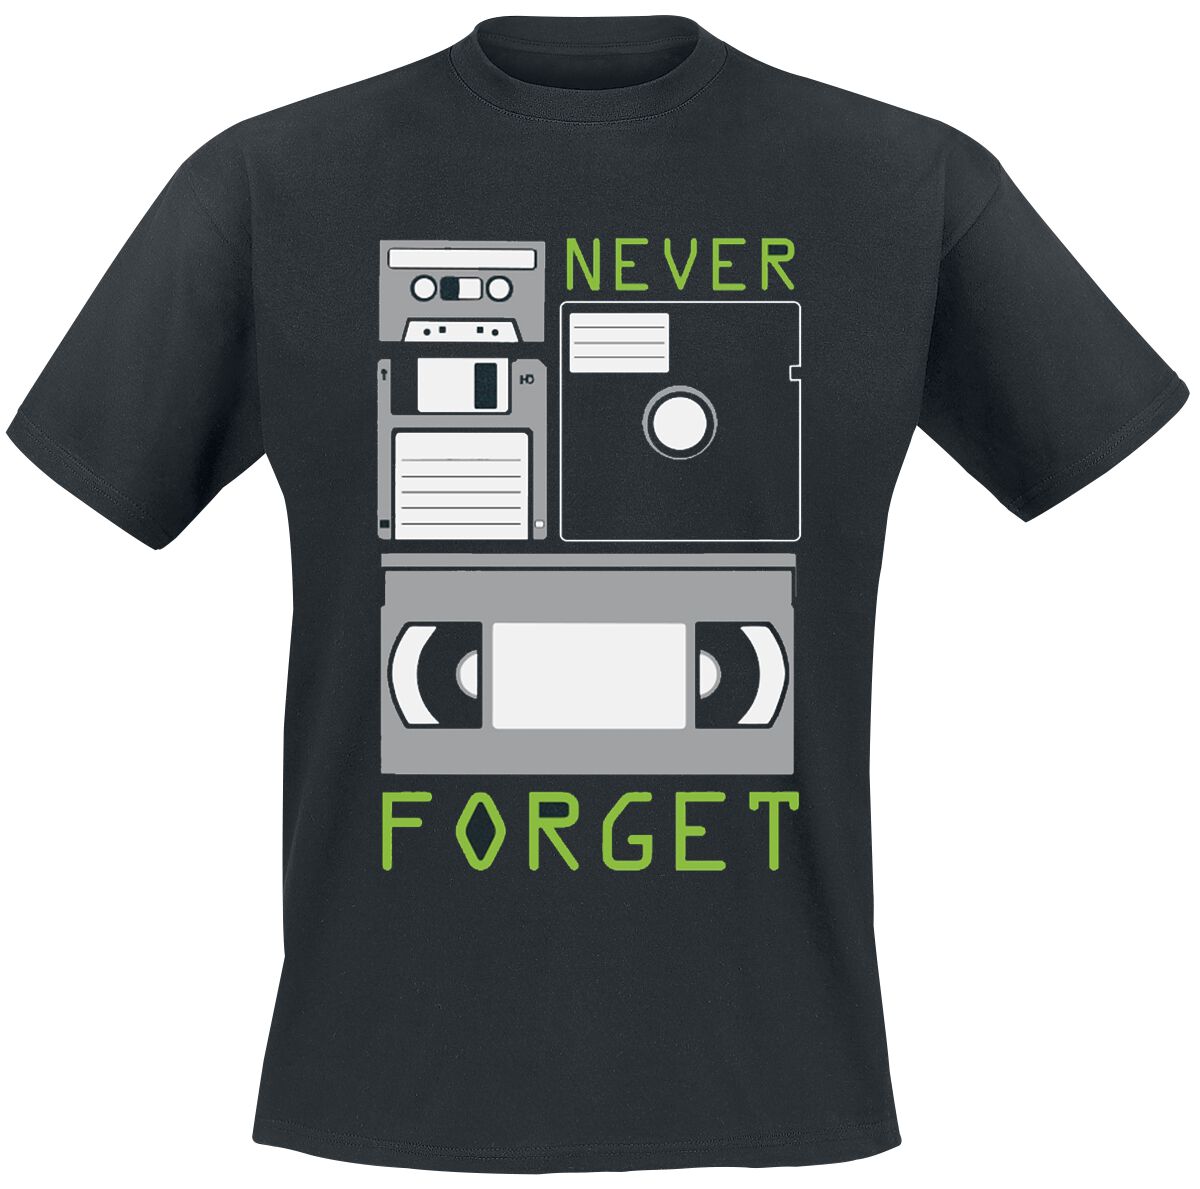 Sprüche T-Shirt - Never Forget - M bis 3XL - für Männer - Größe 3XL - schwarz